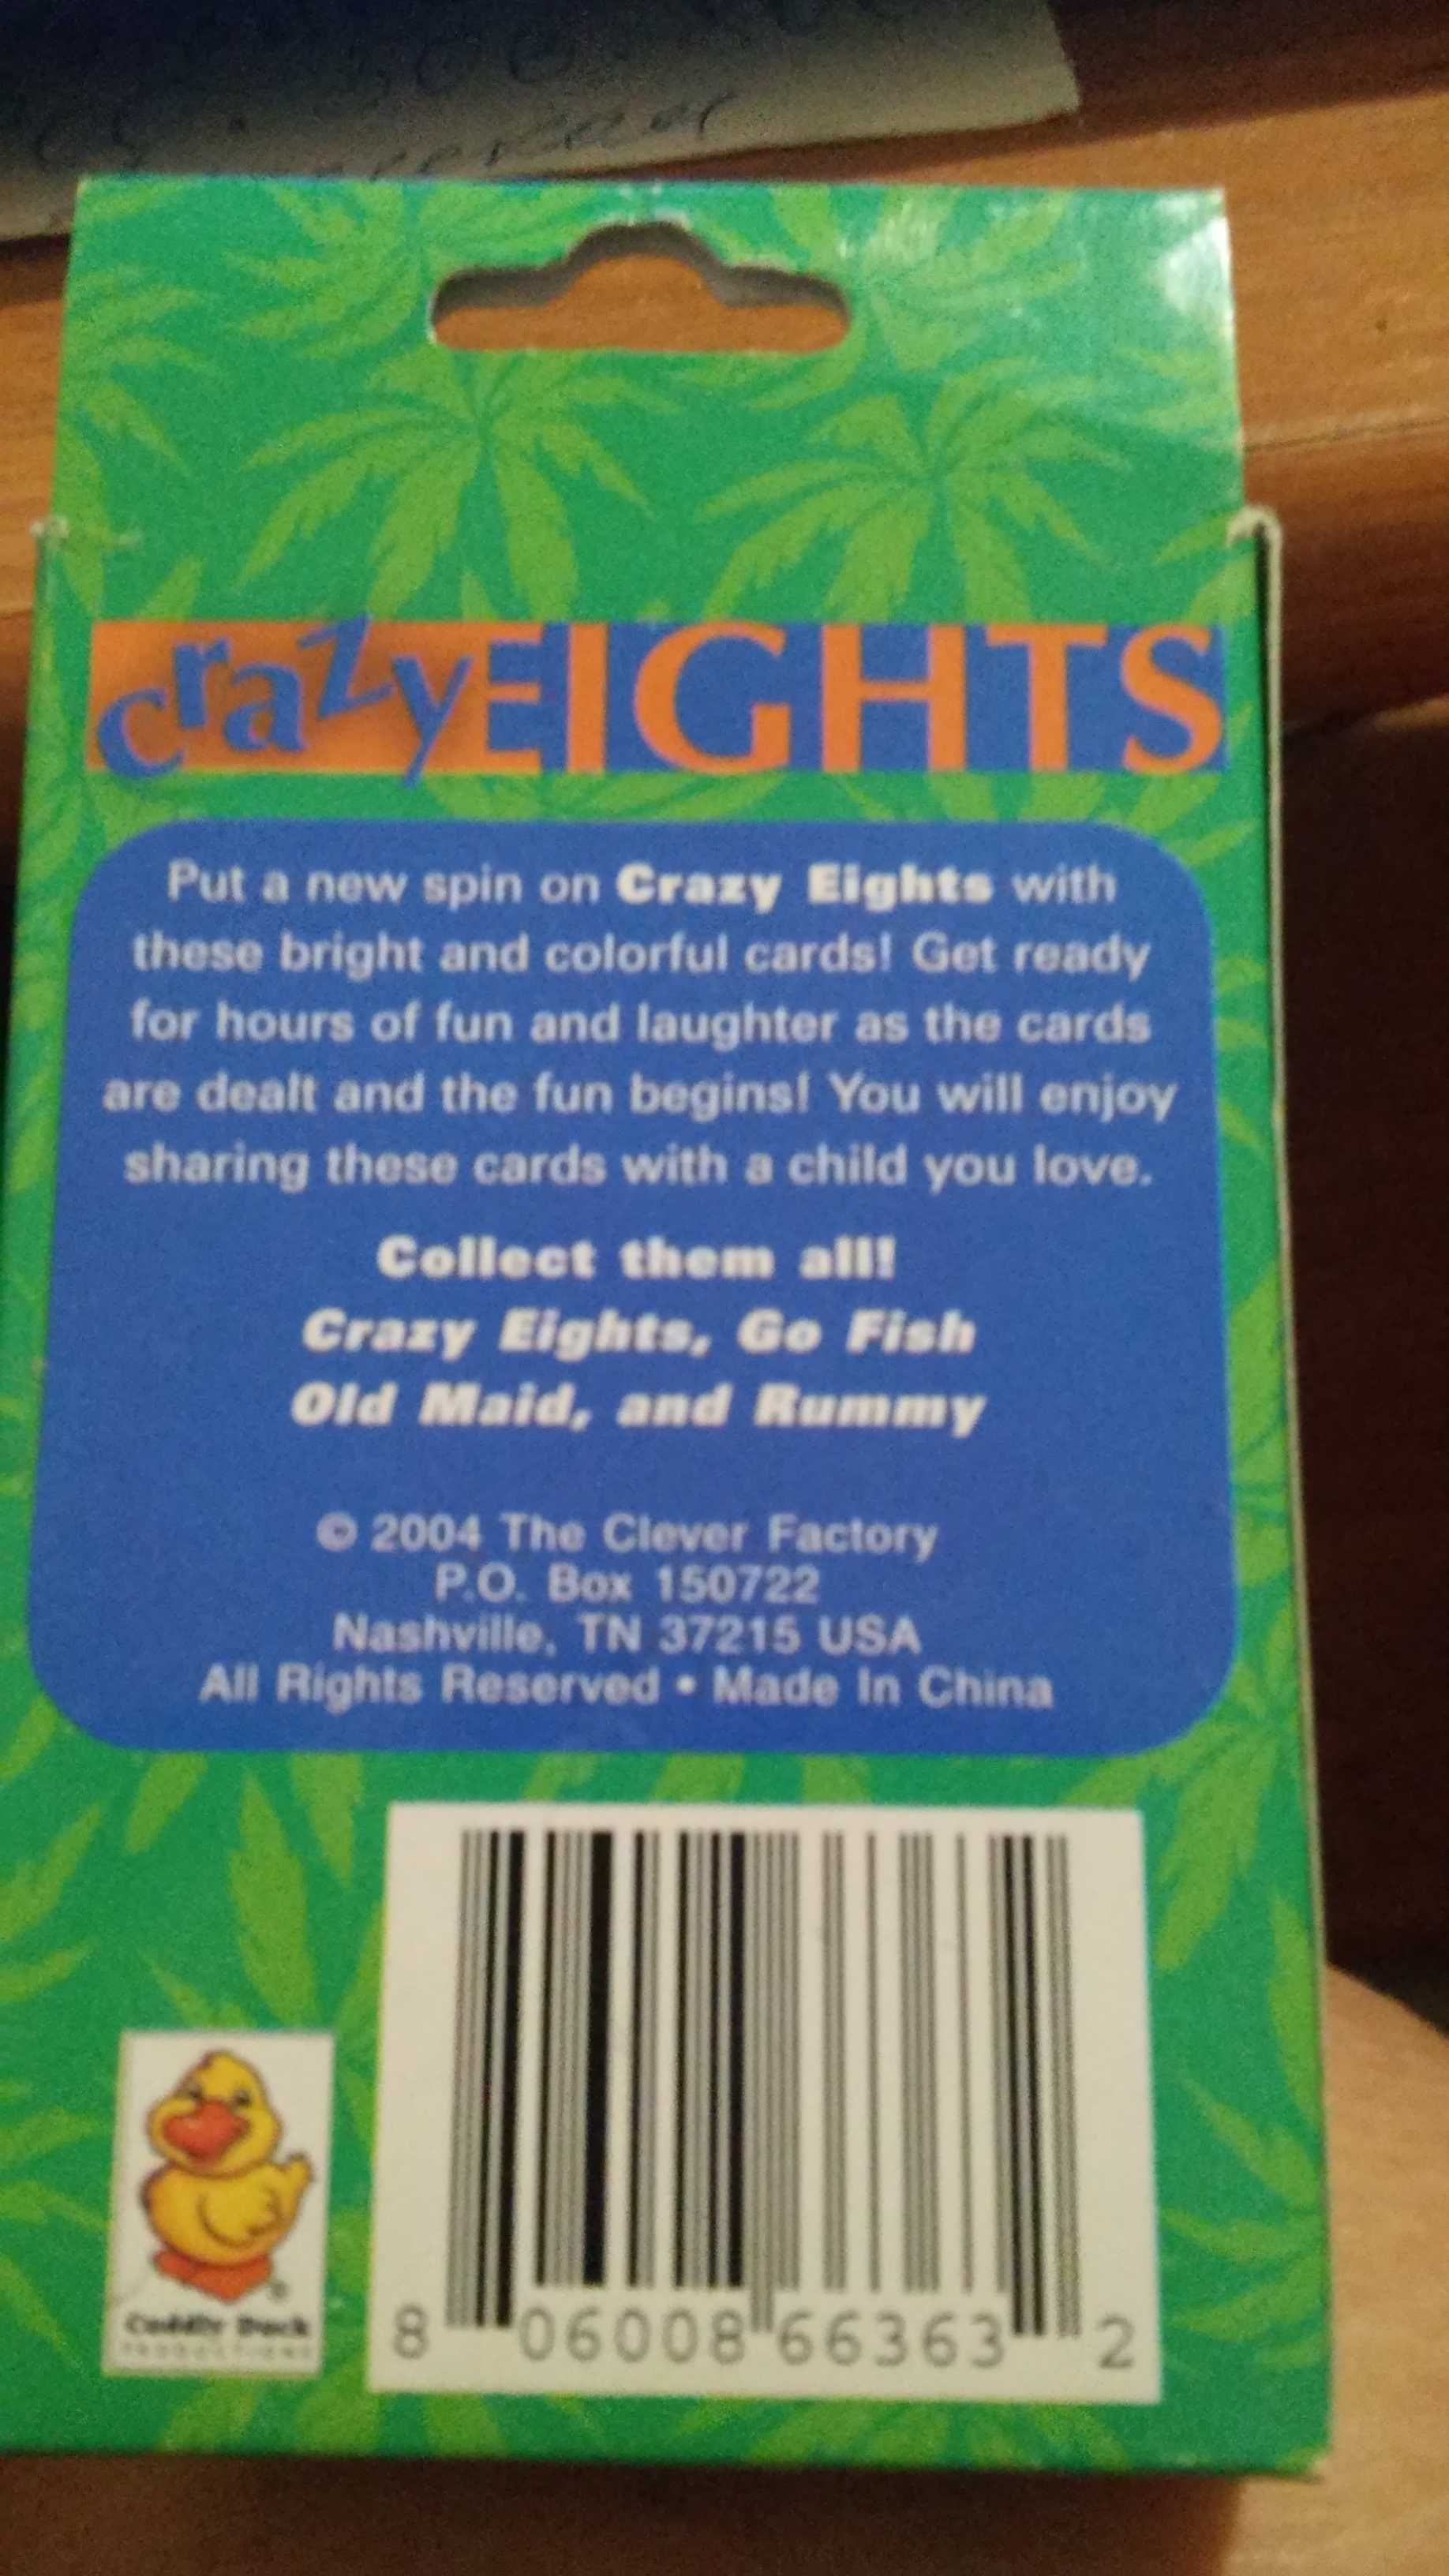 Карты-игра "Сrazy Eights" Безумные восьмерки